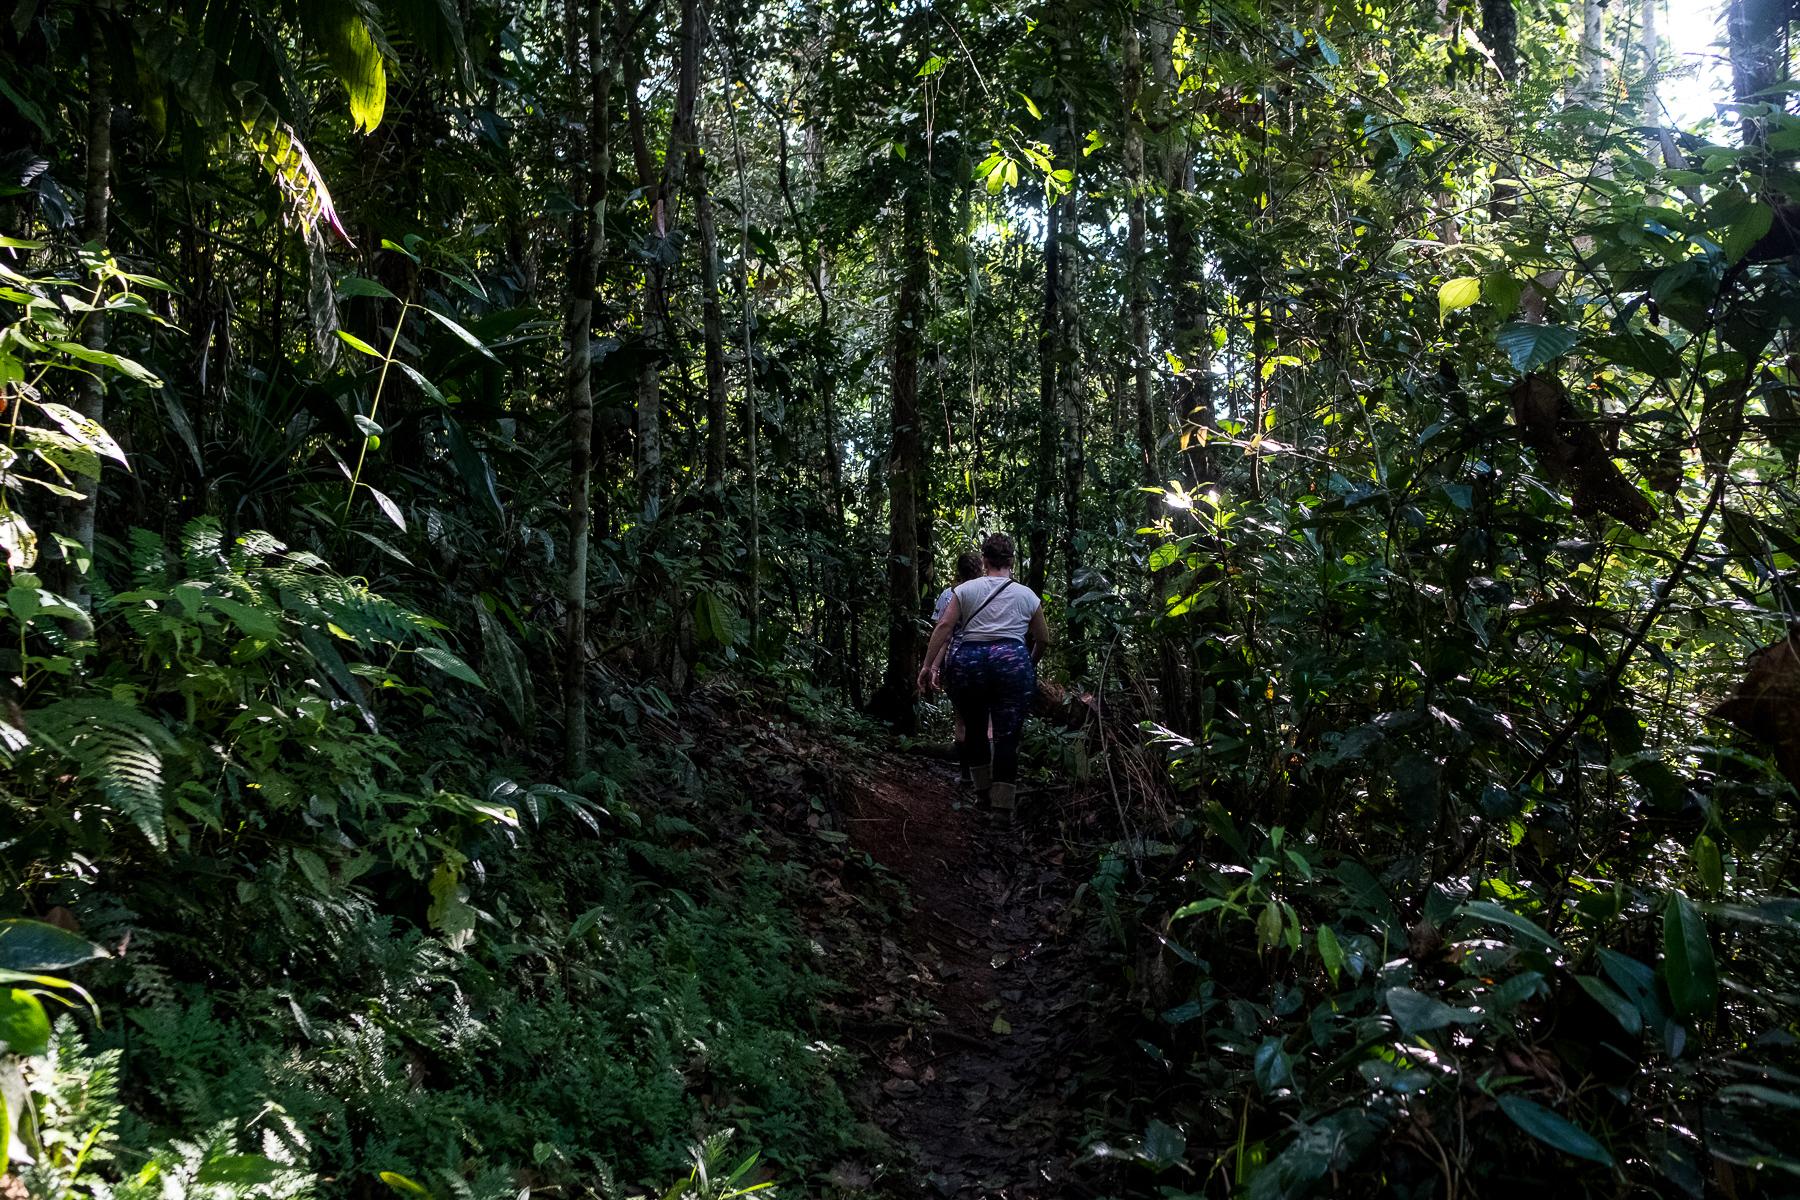 Guardianas - Amazonas: Saving Hunted Primates